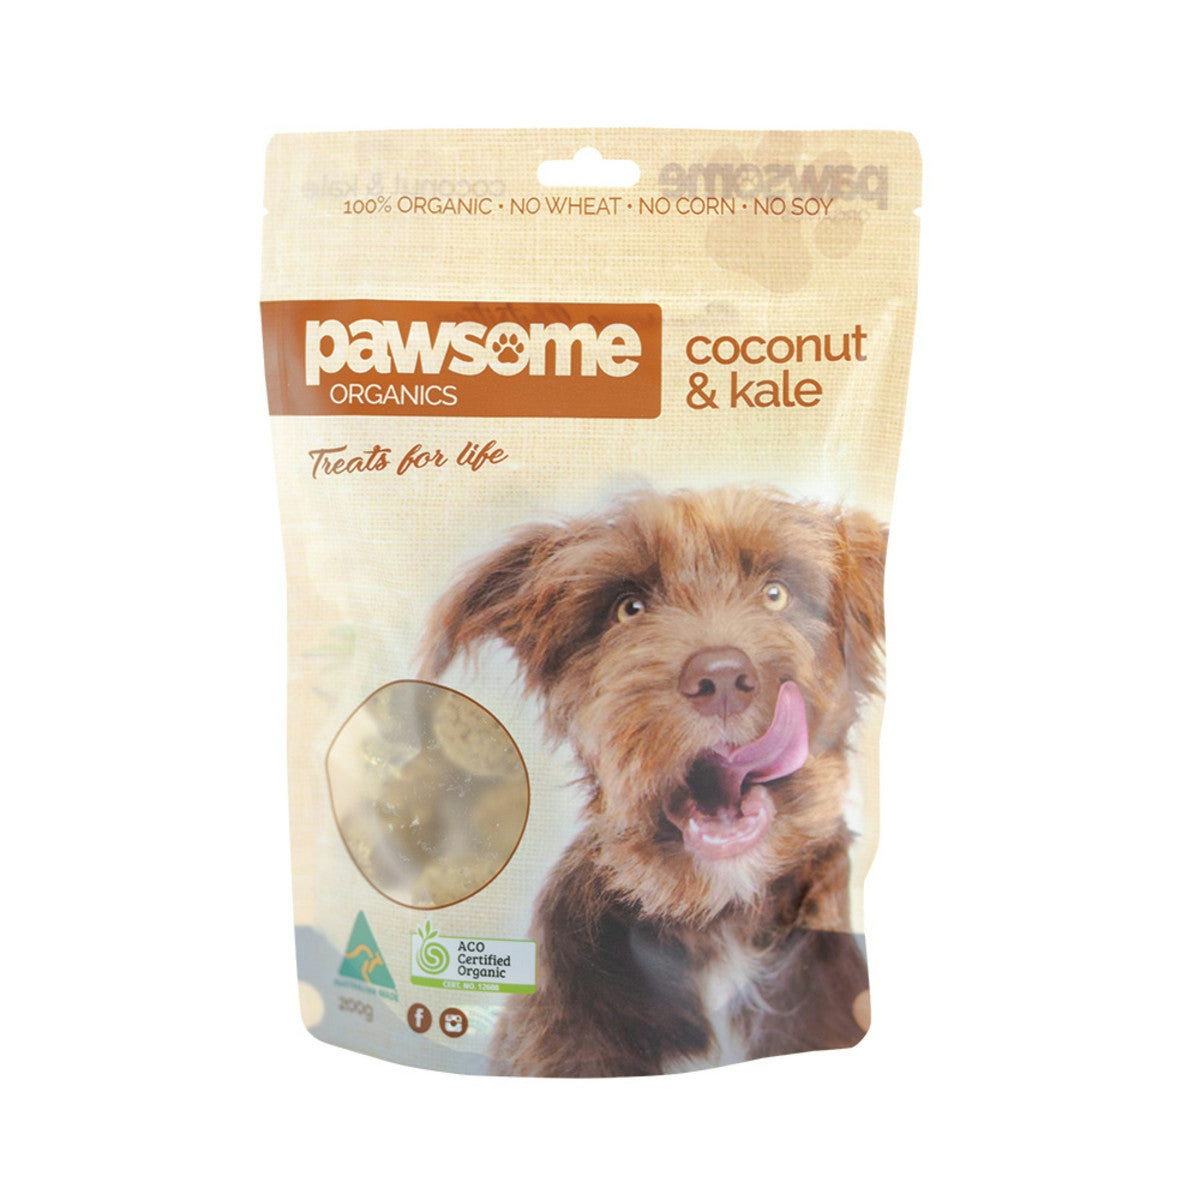 image of Pawsome Organics Pet Treats Coconut & Kale 200g on white background 